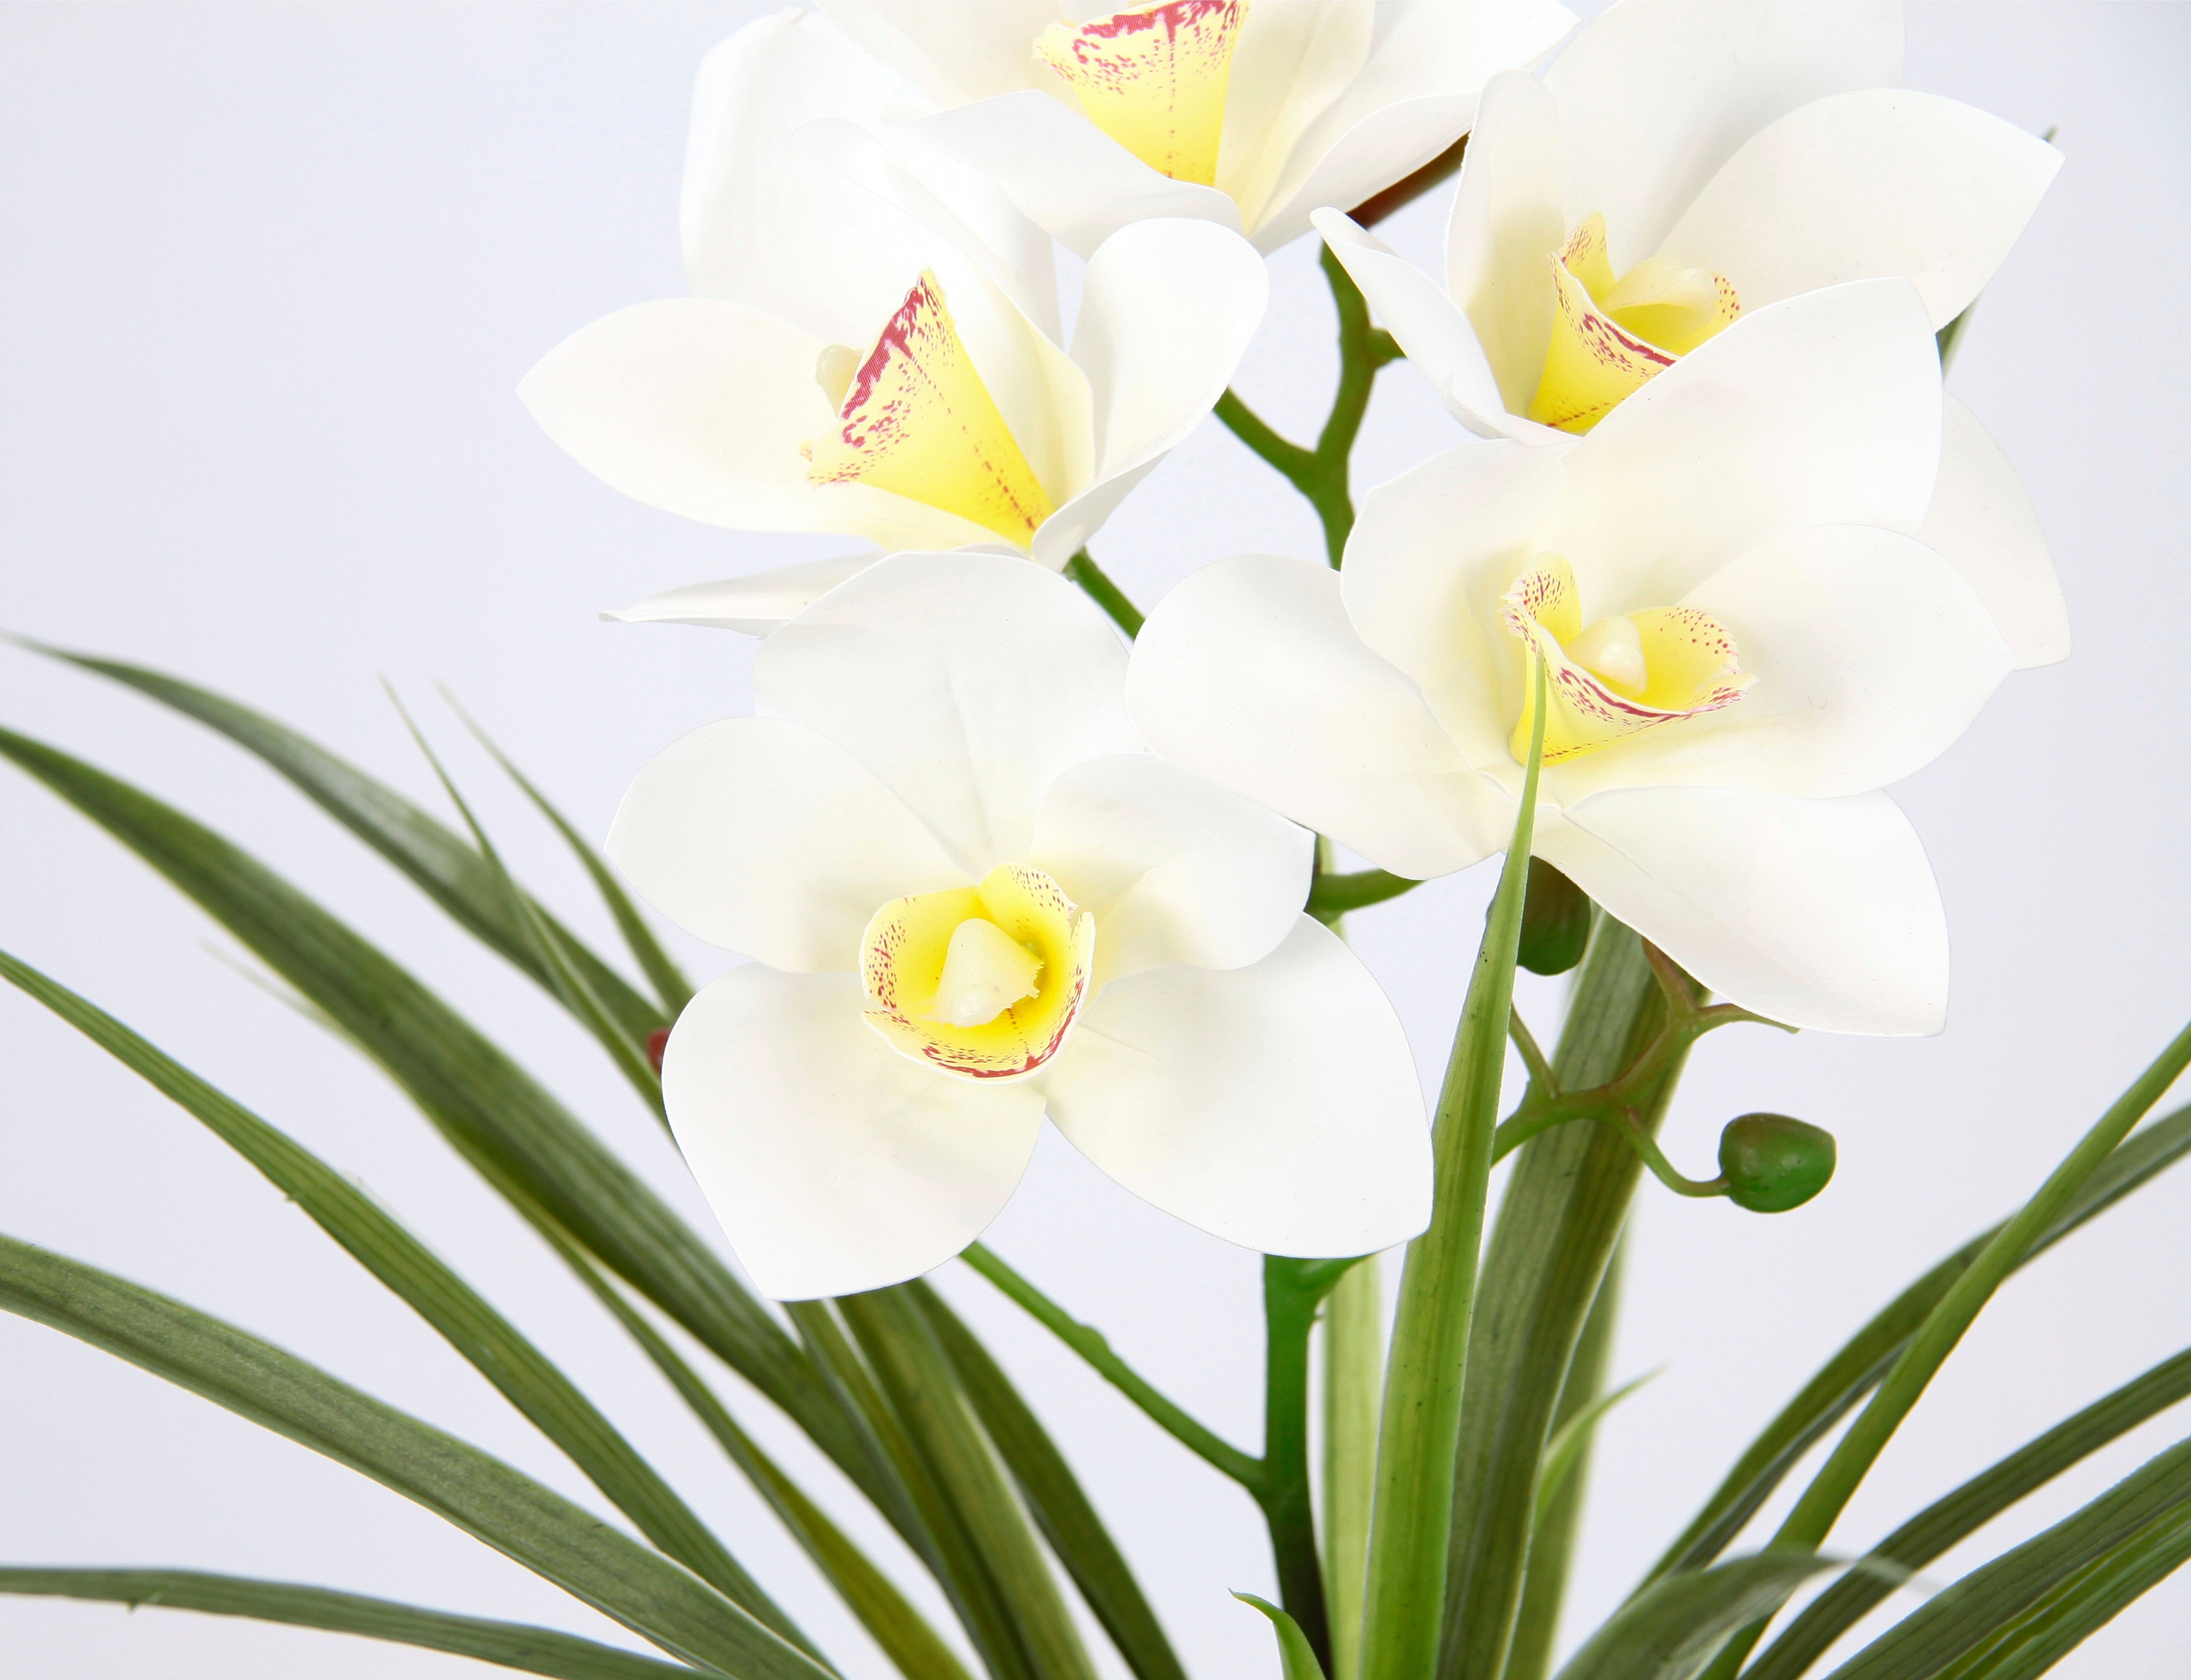 Kunstblume Orchidee, my im home, Creme Cymbidium-Orchidee Mit aus Zement 40 Höhe Blume Künstliche Blätter Topf cm